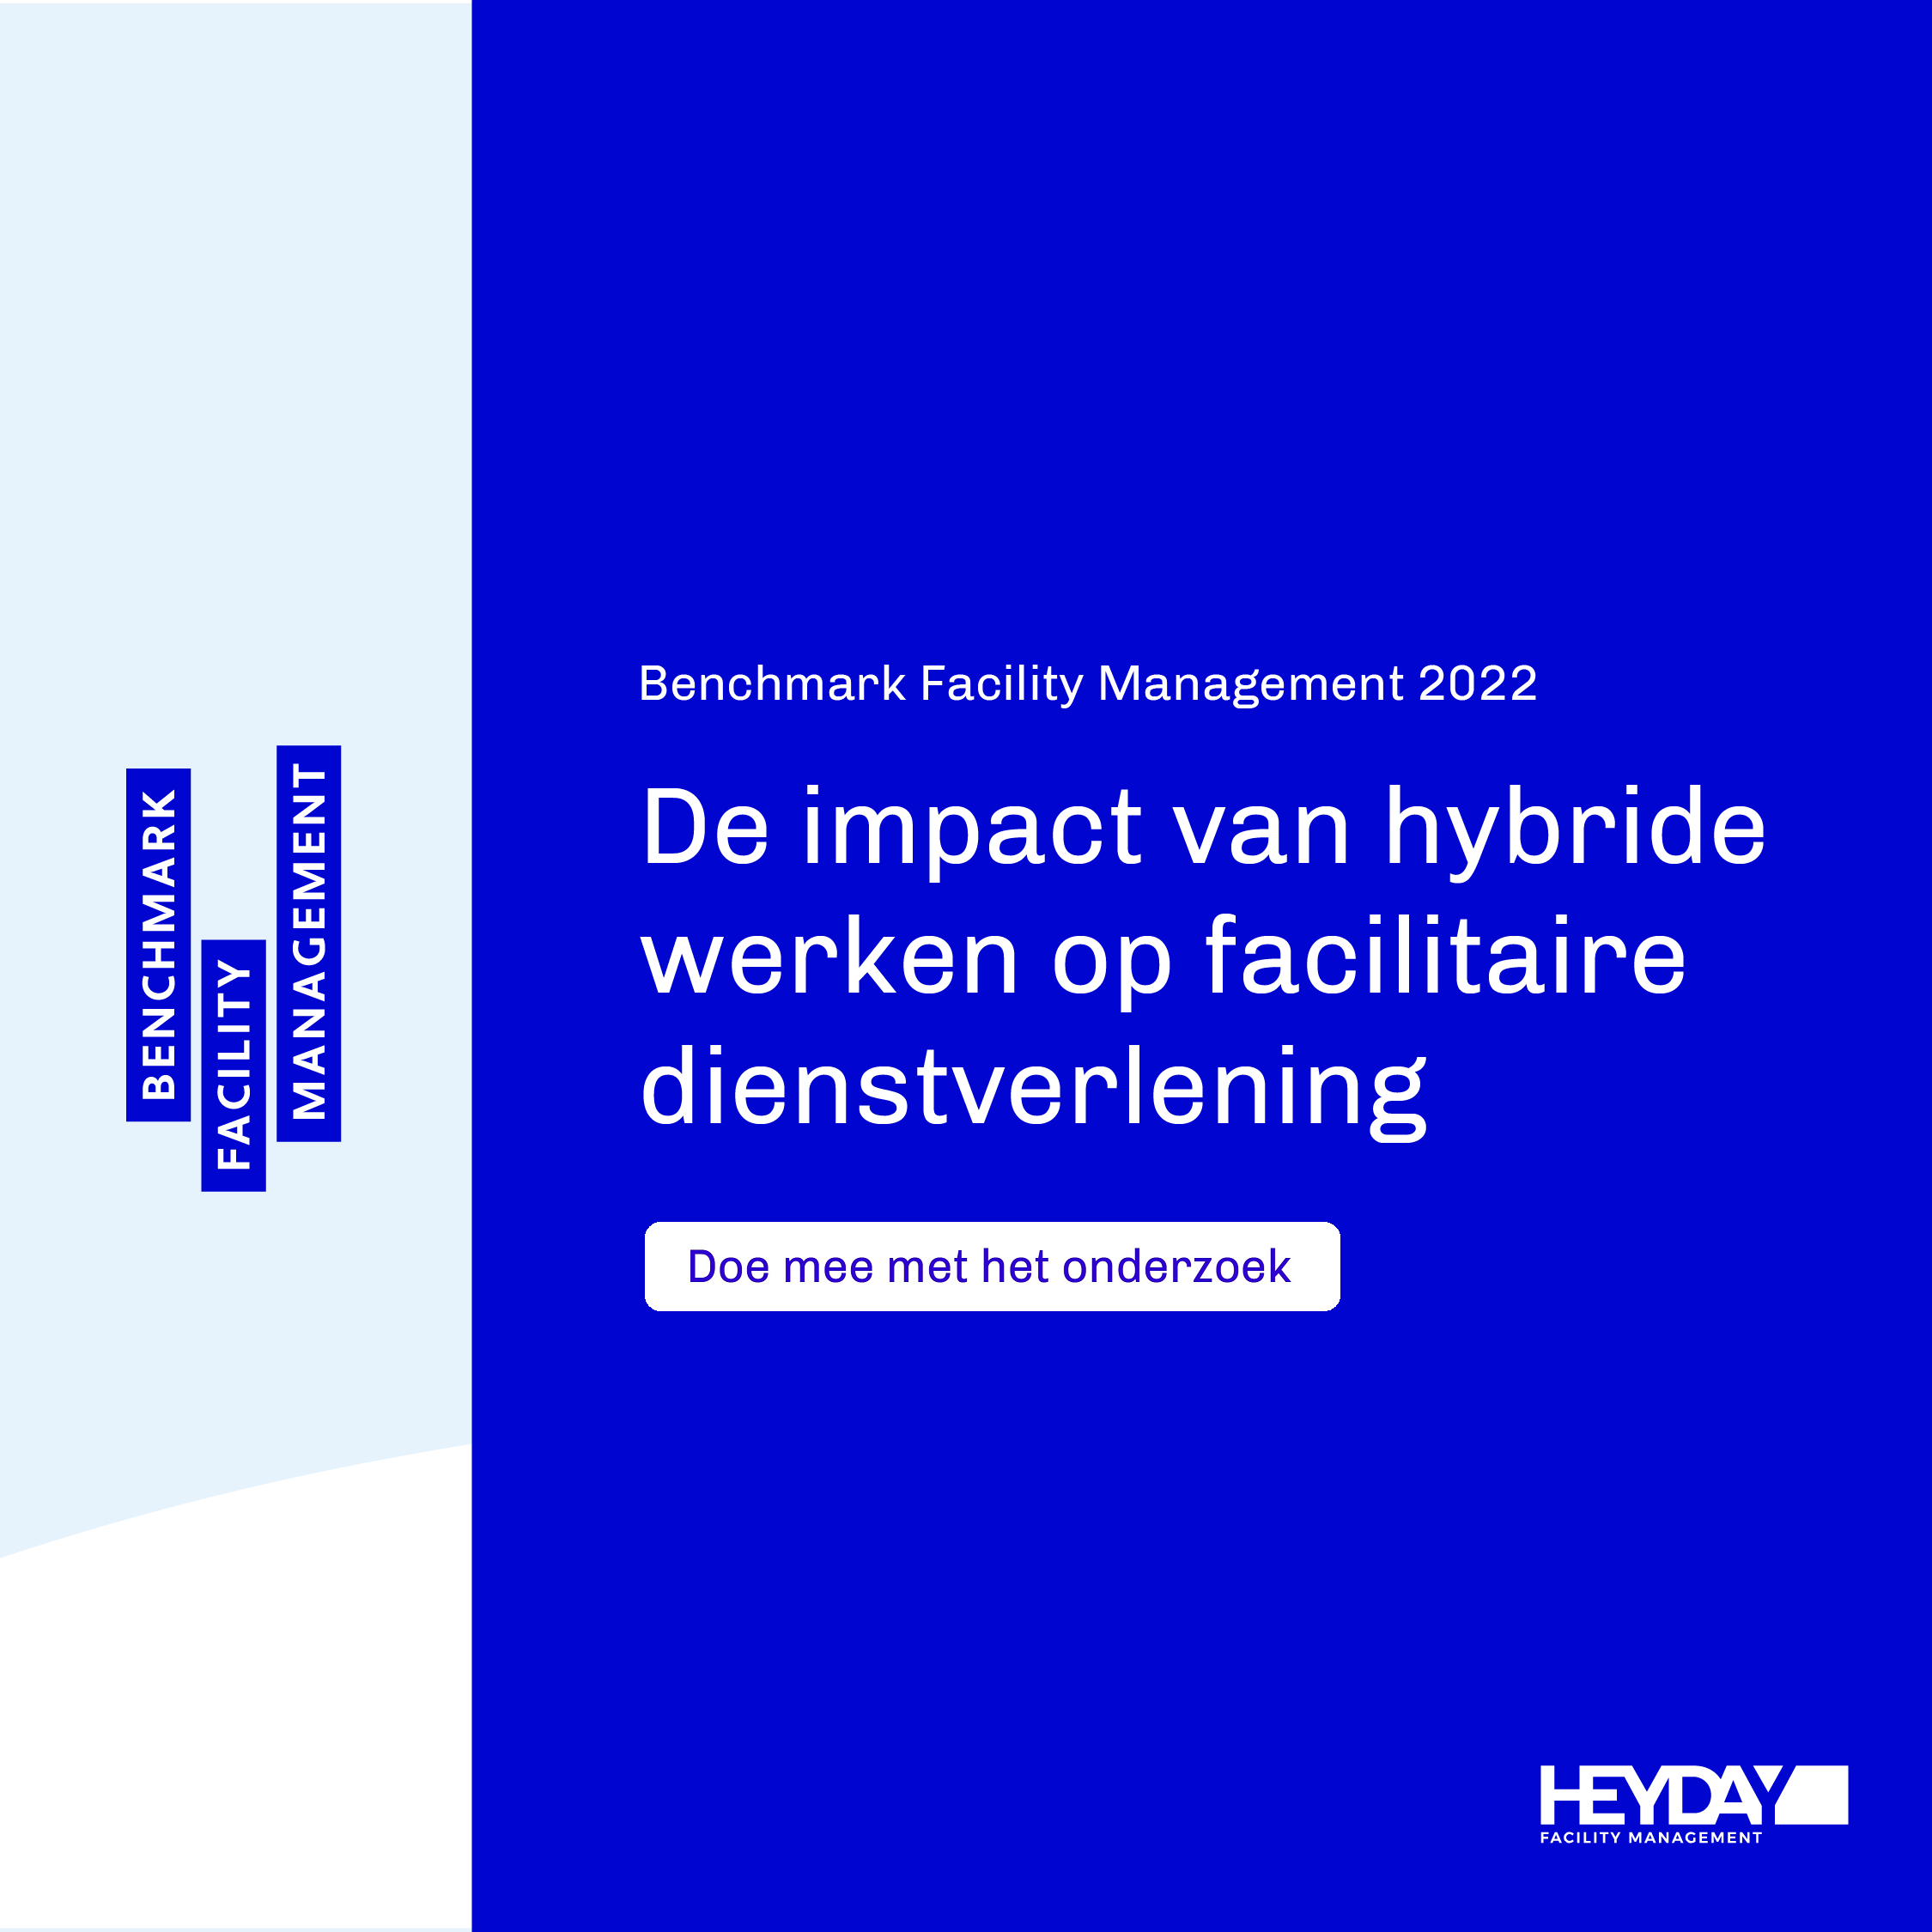 HEYDAY lanceert Benchmark Facility Management 2022: de impact van hybride werken op facilitaire dienstverlening